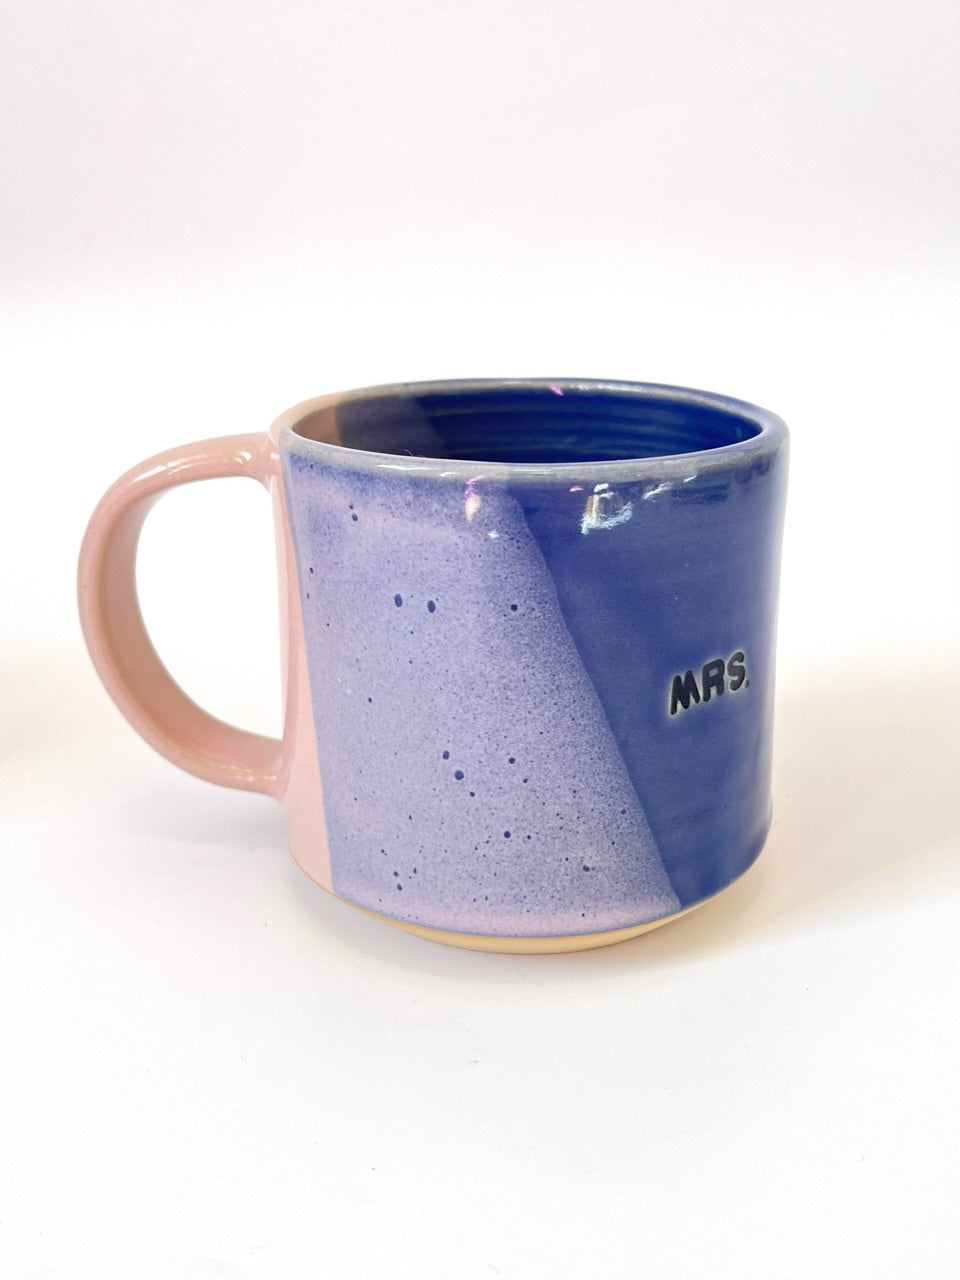 Ceramic "Mrs." Mug - Royal Blue / Blush